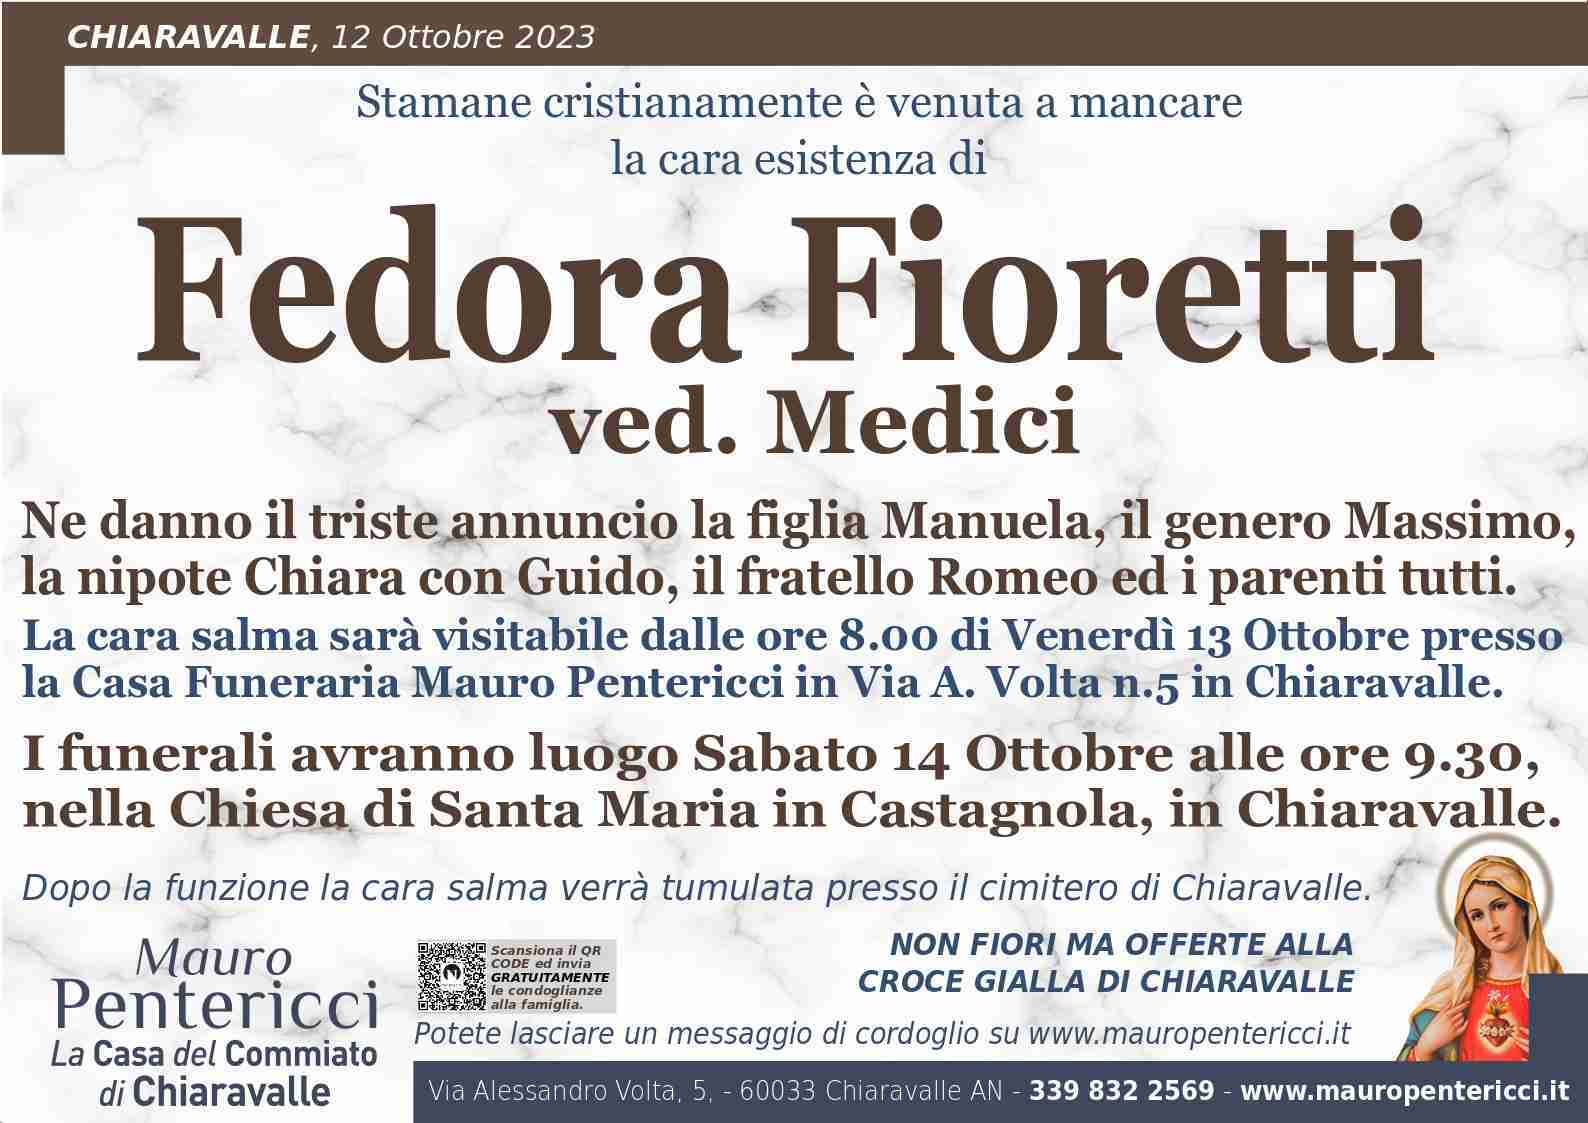 Fedora Fioretti